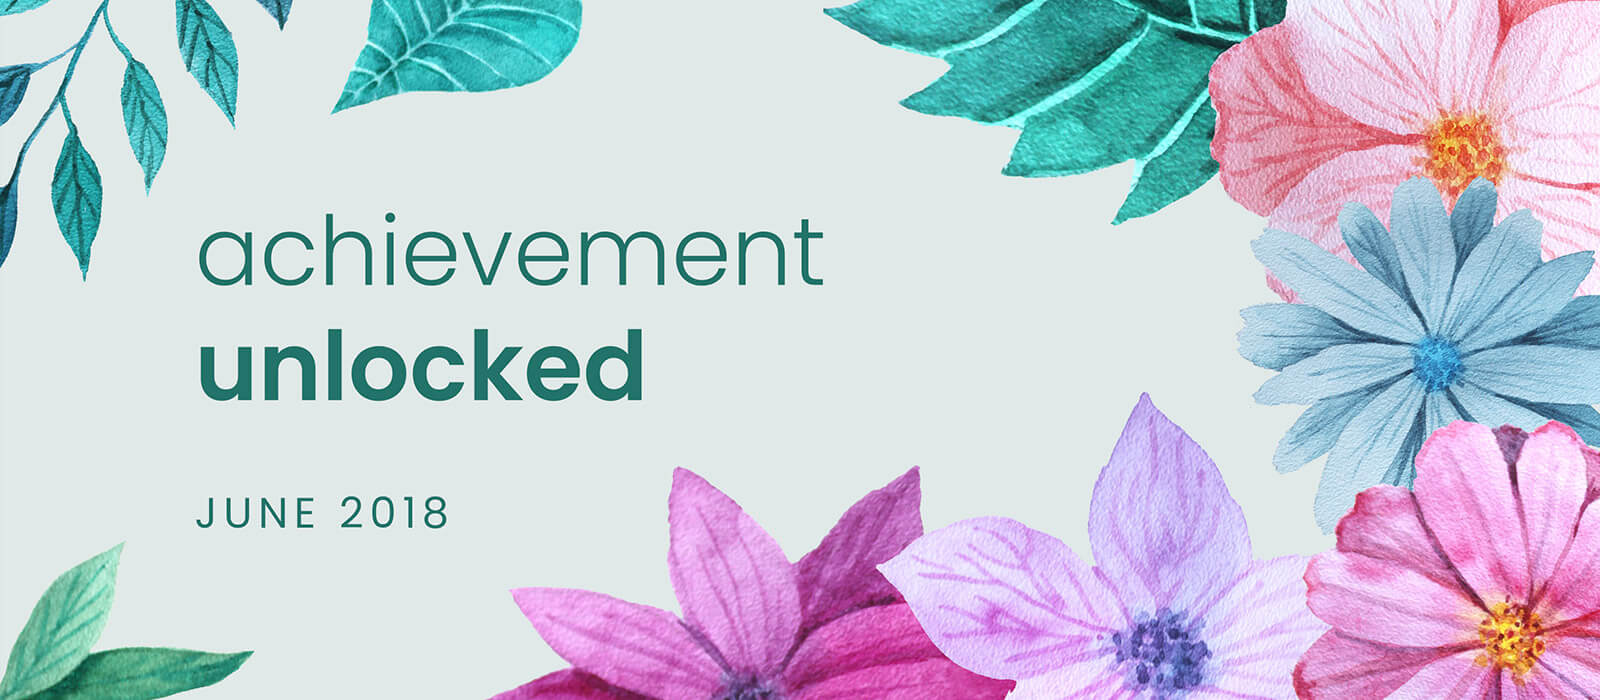 Achievement Unlocked: June 2018 banner